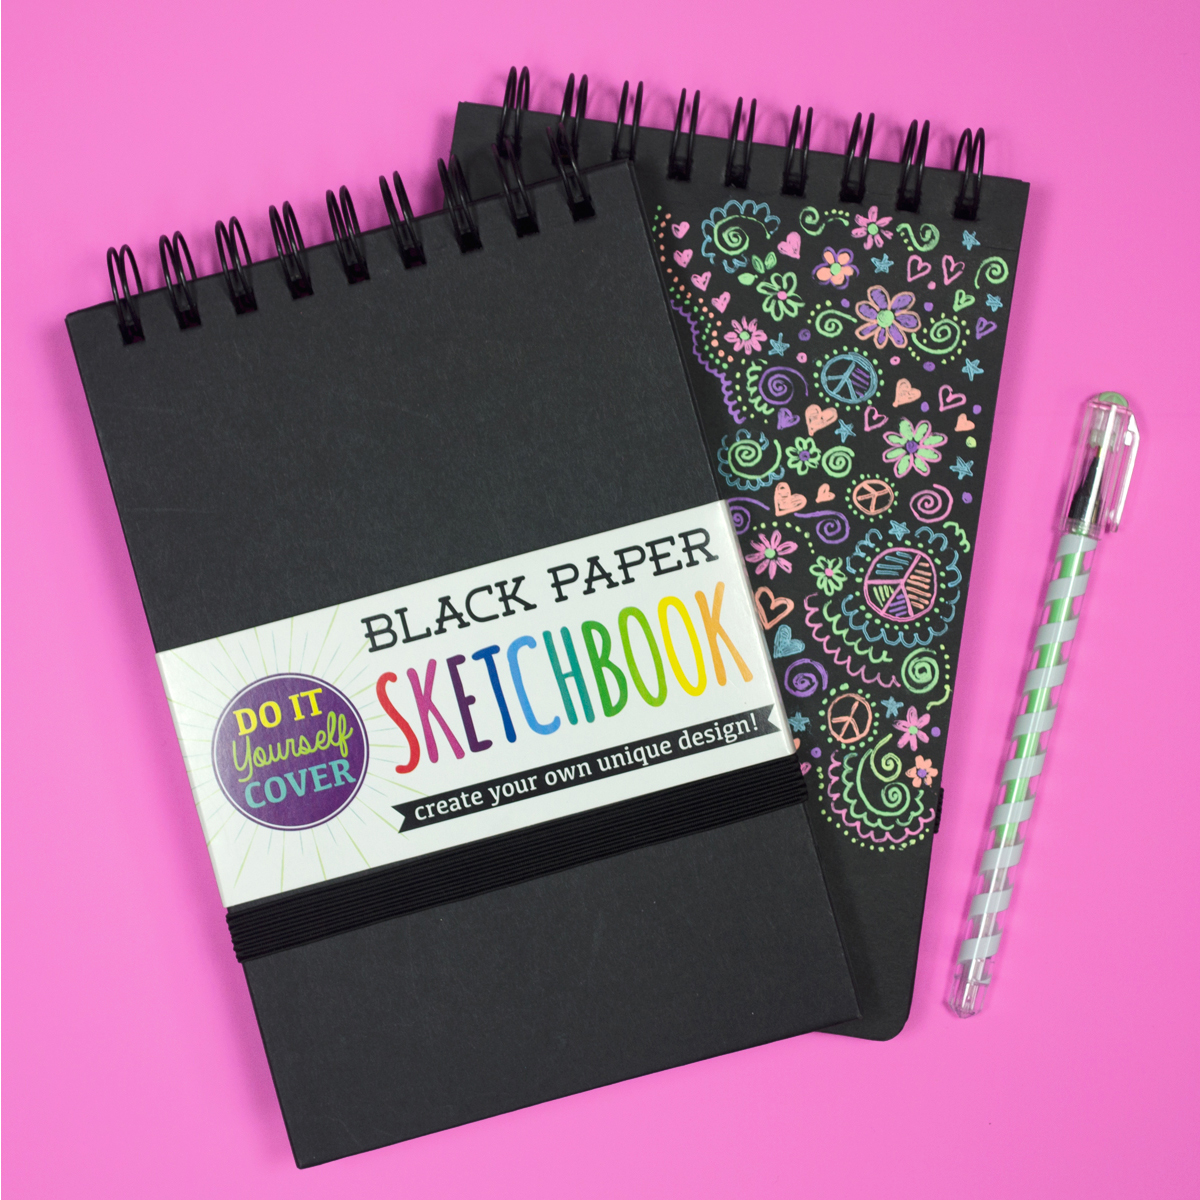 Black Paper Sketchbook with art